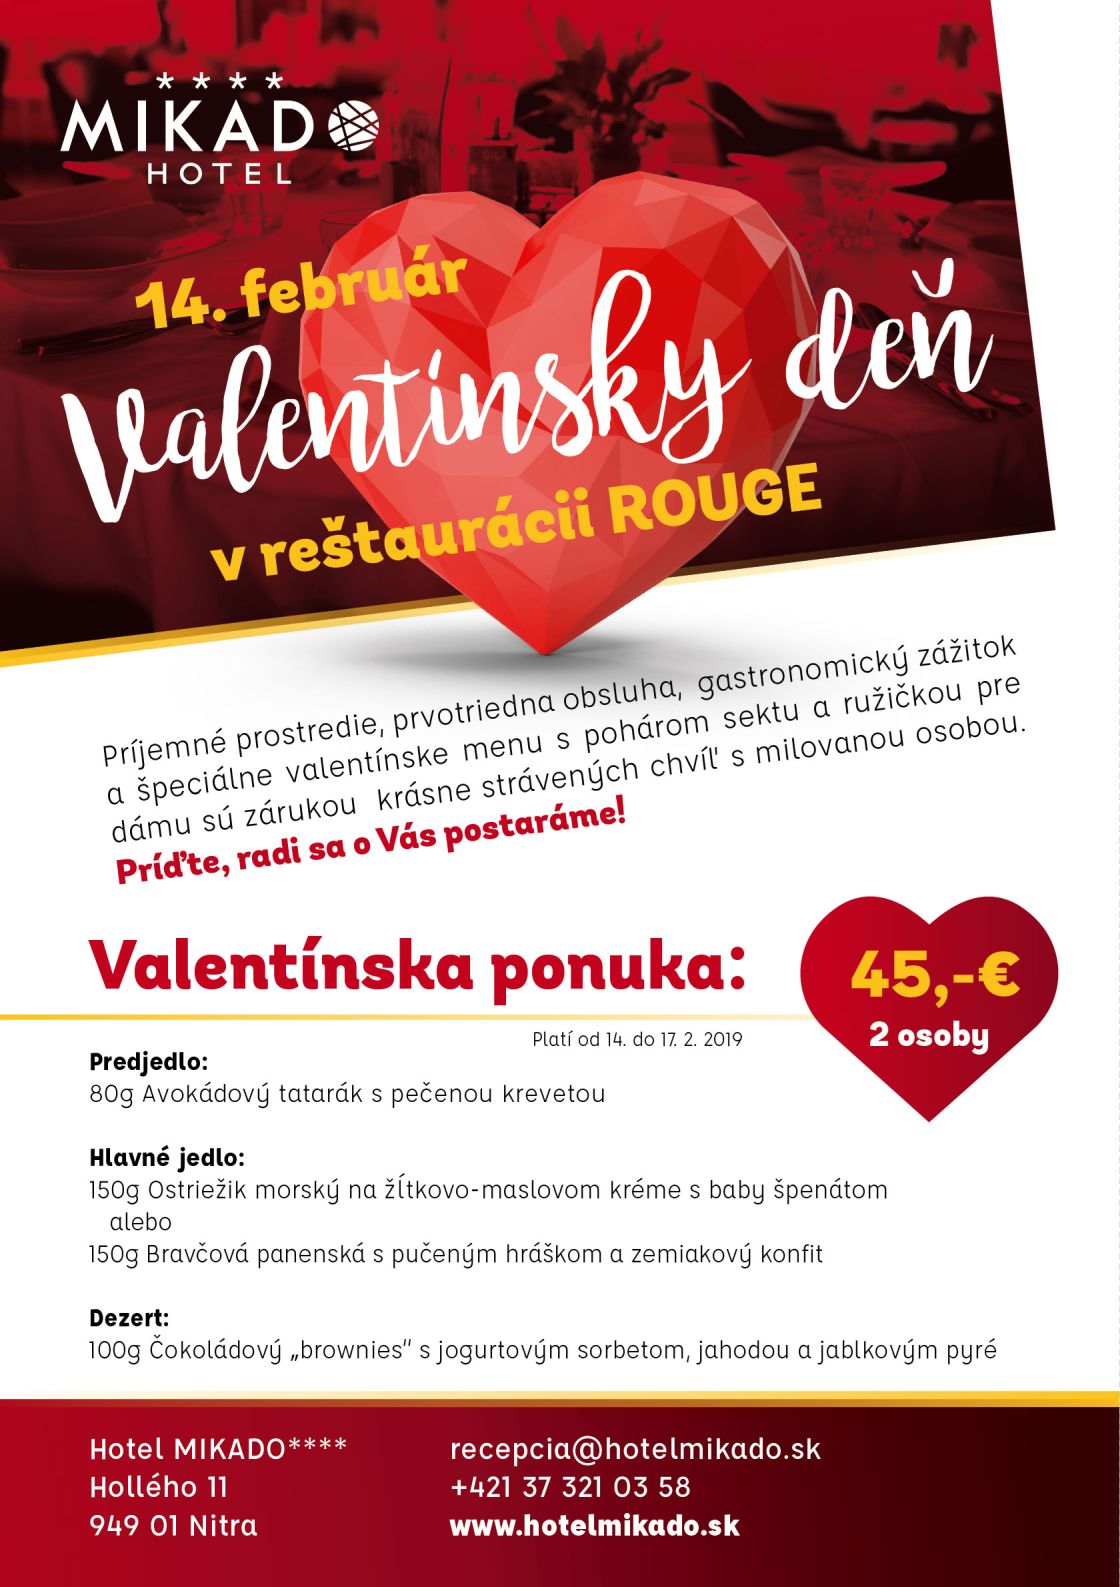 Valentín v hoteli MIKADO - romantická veèera pre dvoch reštaurácia Rouge - 14. februára 2019